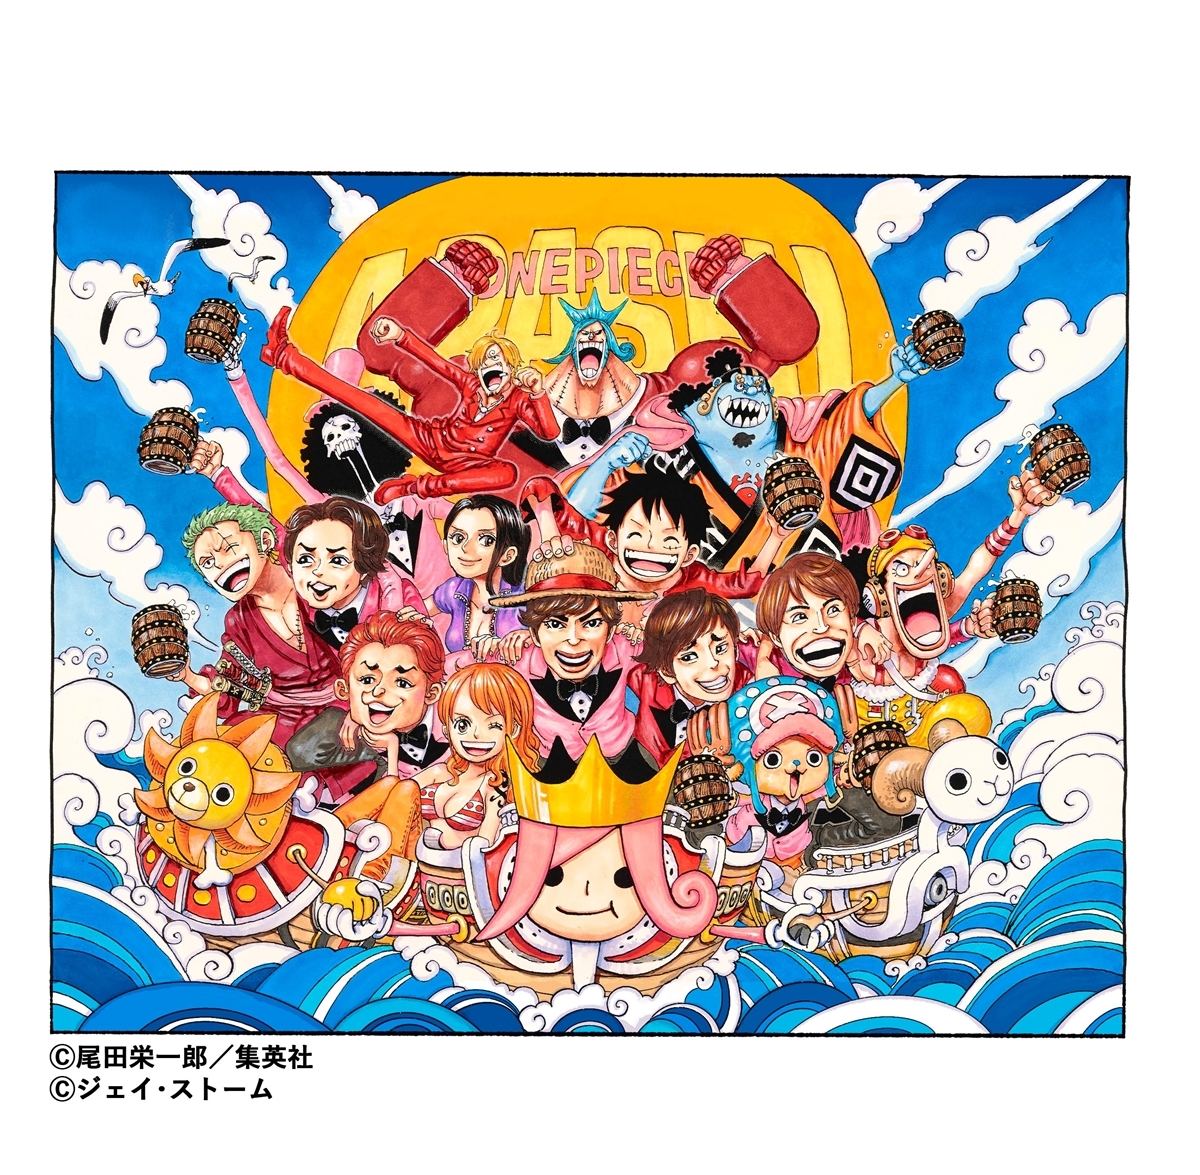 嵐 One Piece とコラボ 松本潤感激 僕らも最高の航海を マイナビニュース